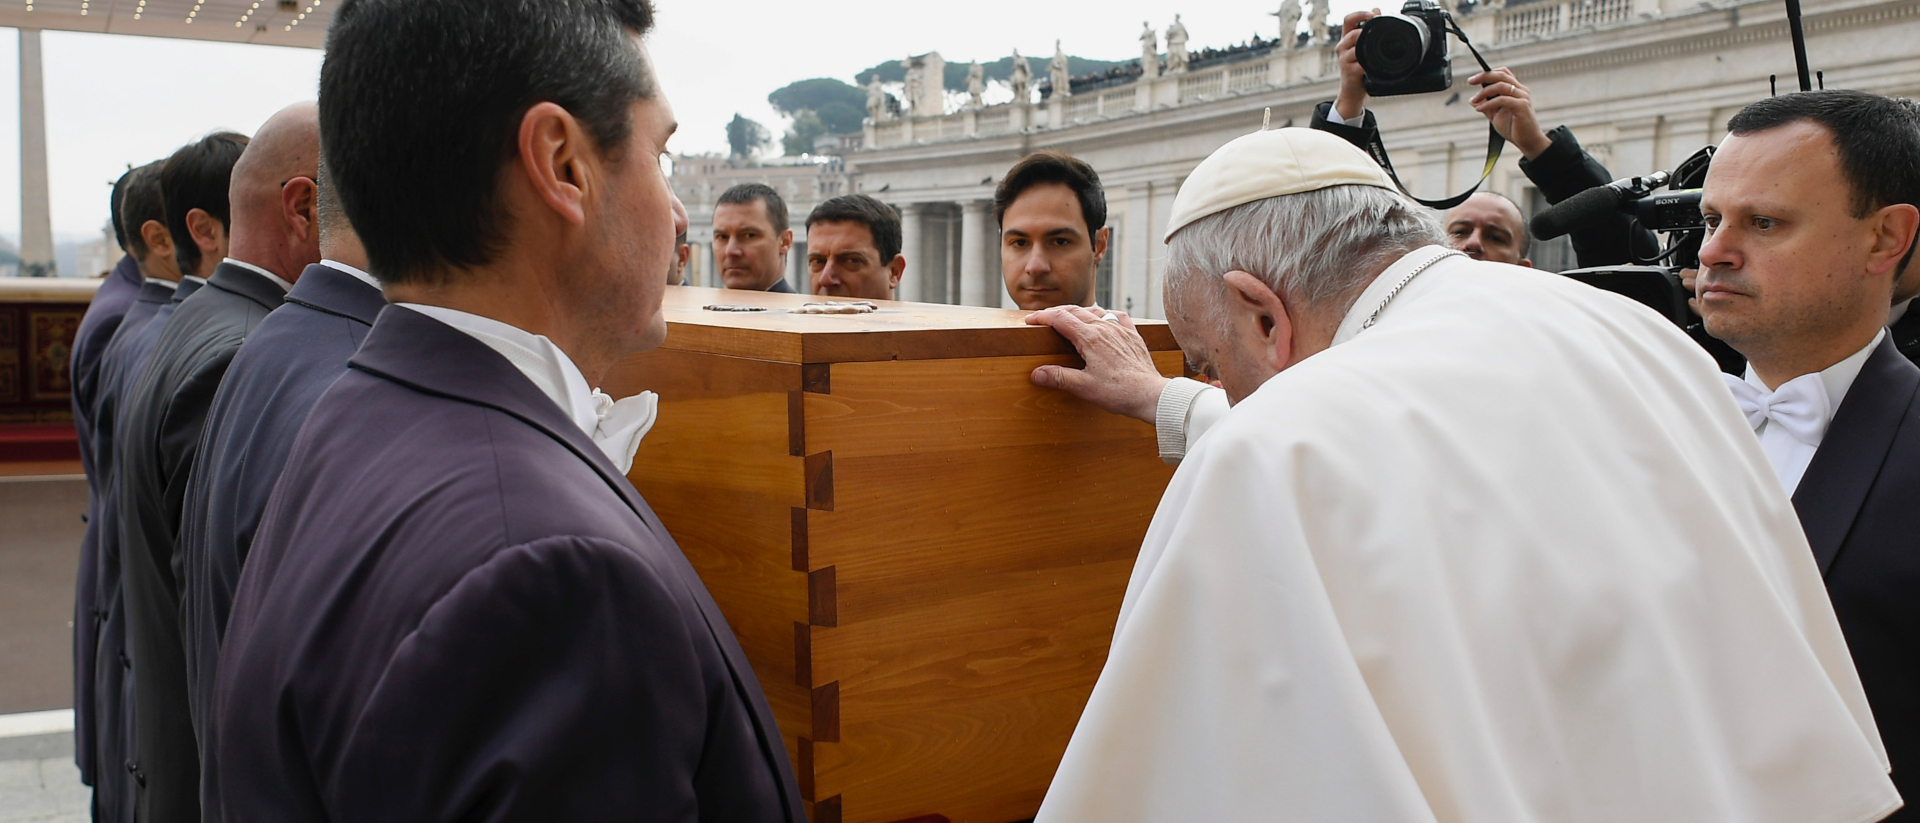 Papst Franziskus trauert um seinen Vorgänger Benedikt XVI.